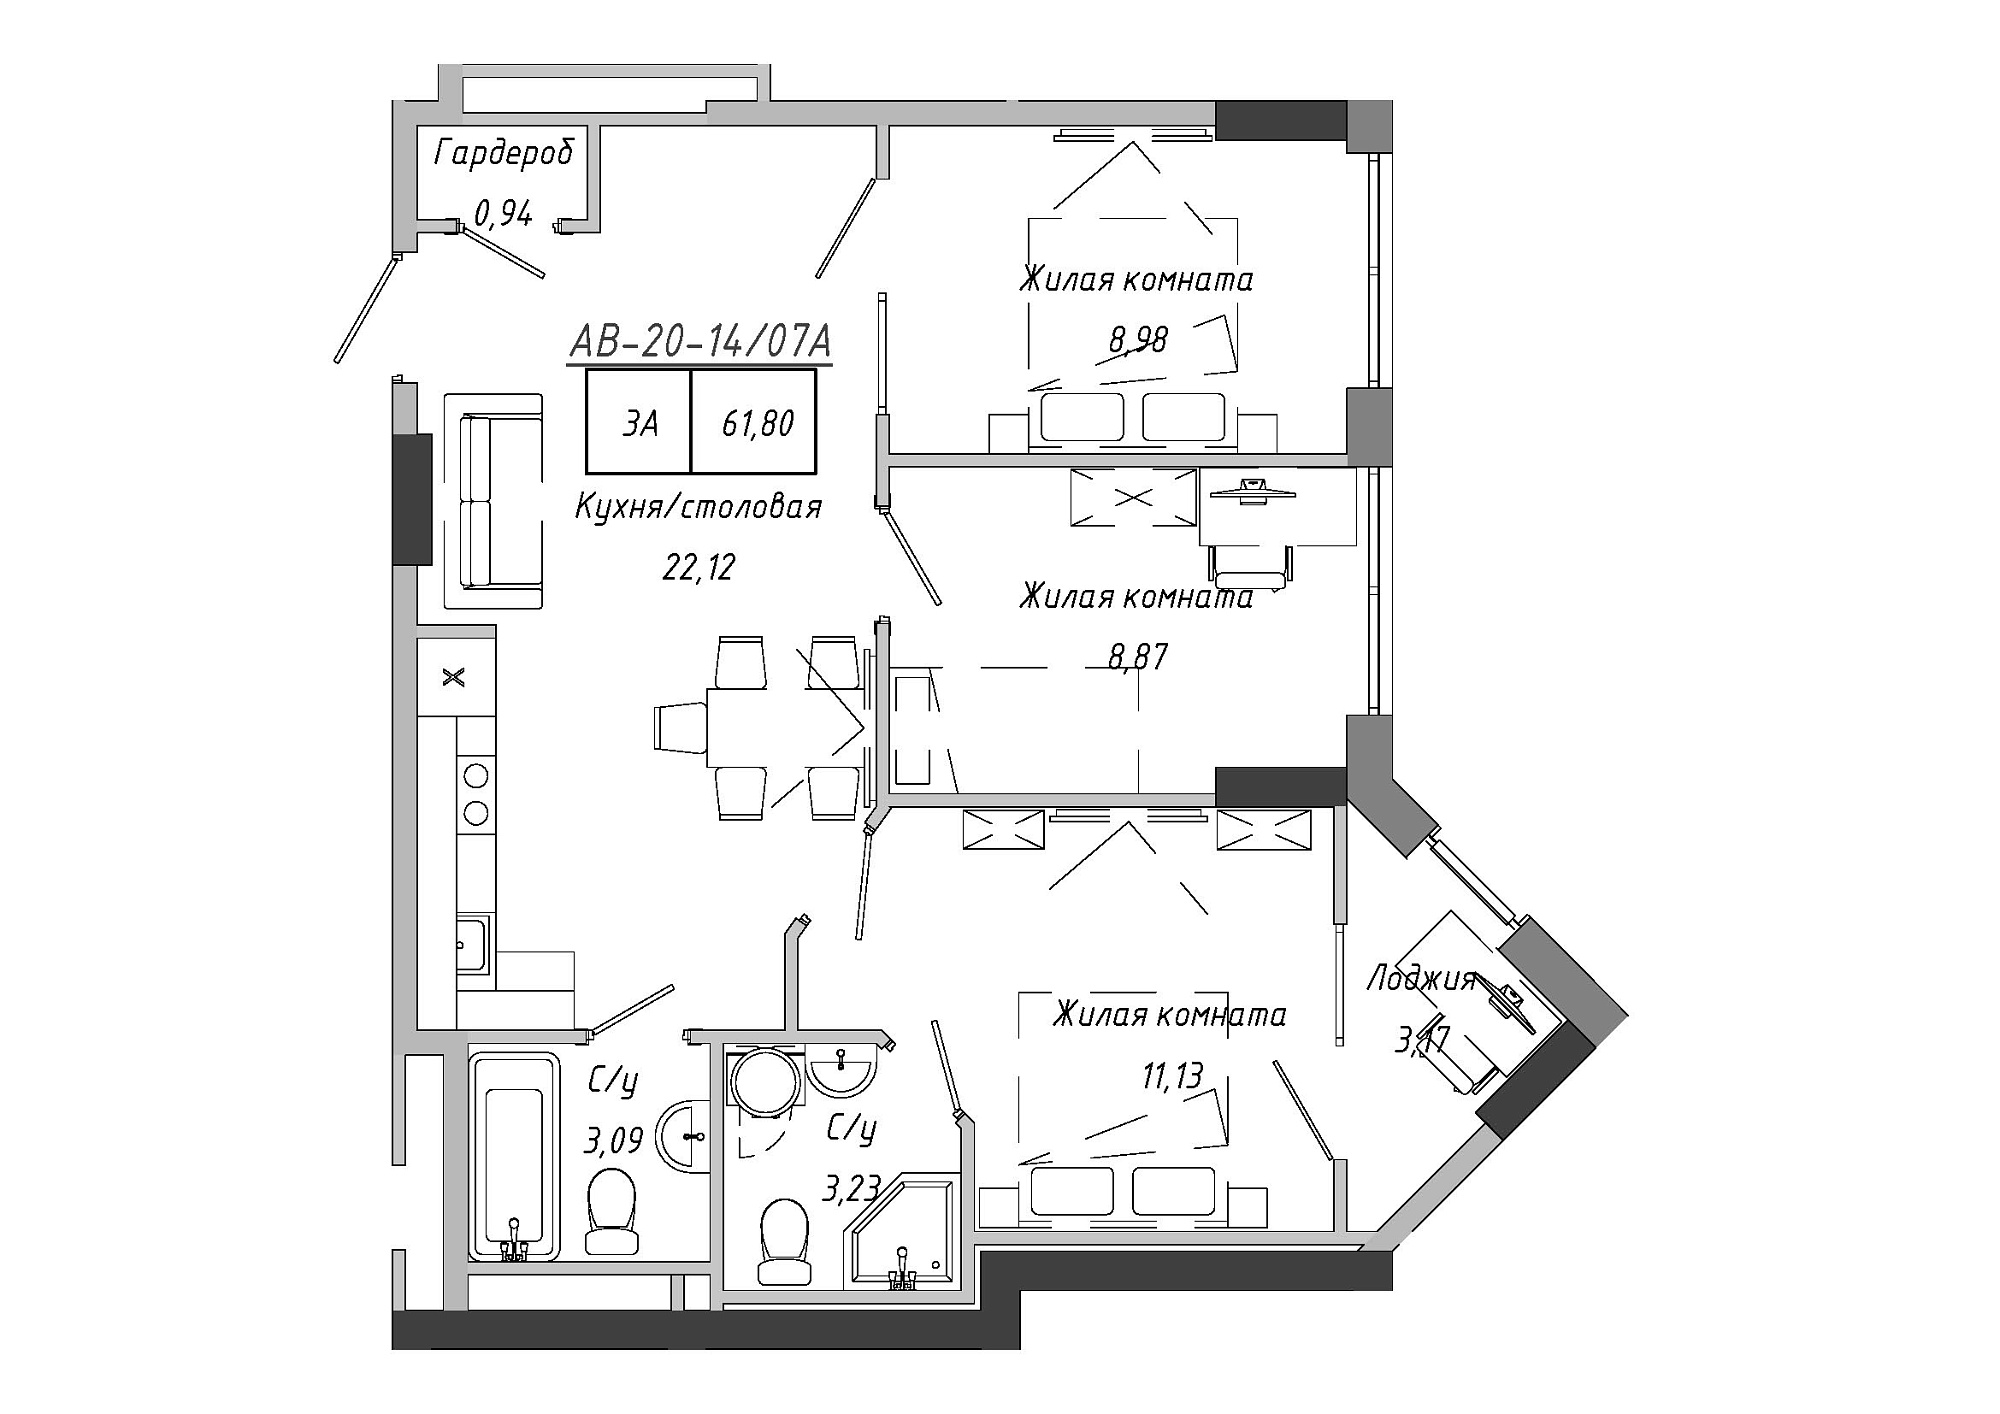 Планировка 3-к квартира площей 61.8м2, AB-20-14/0107a.